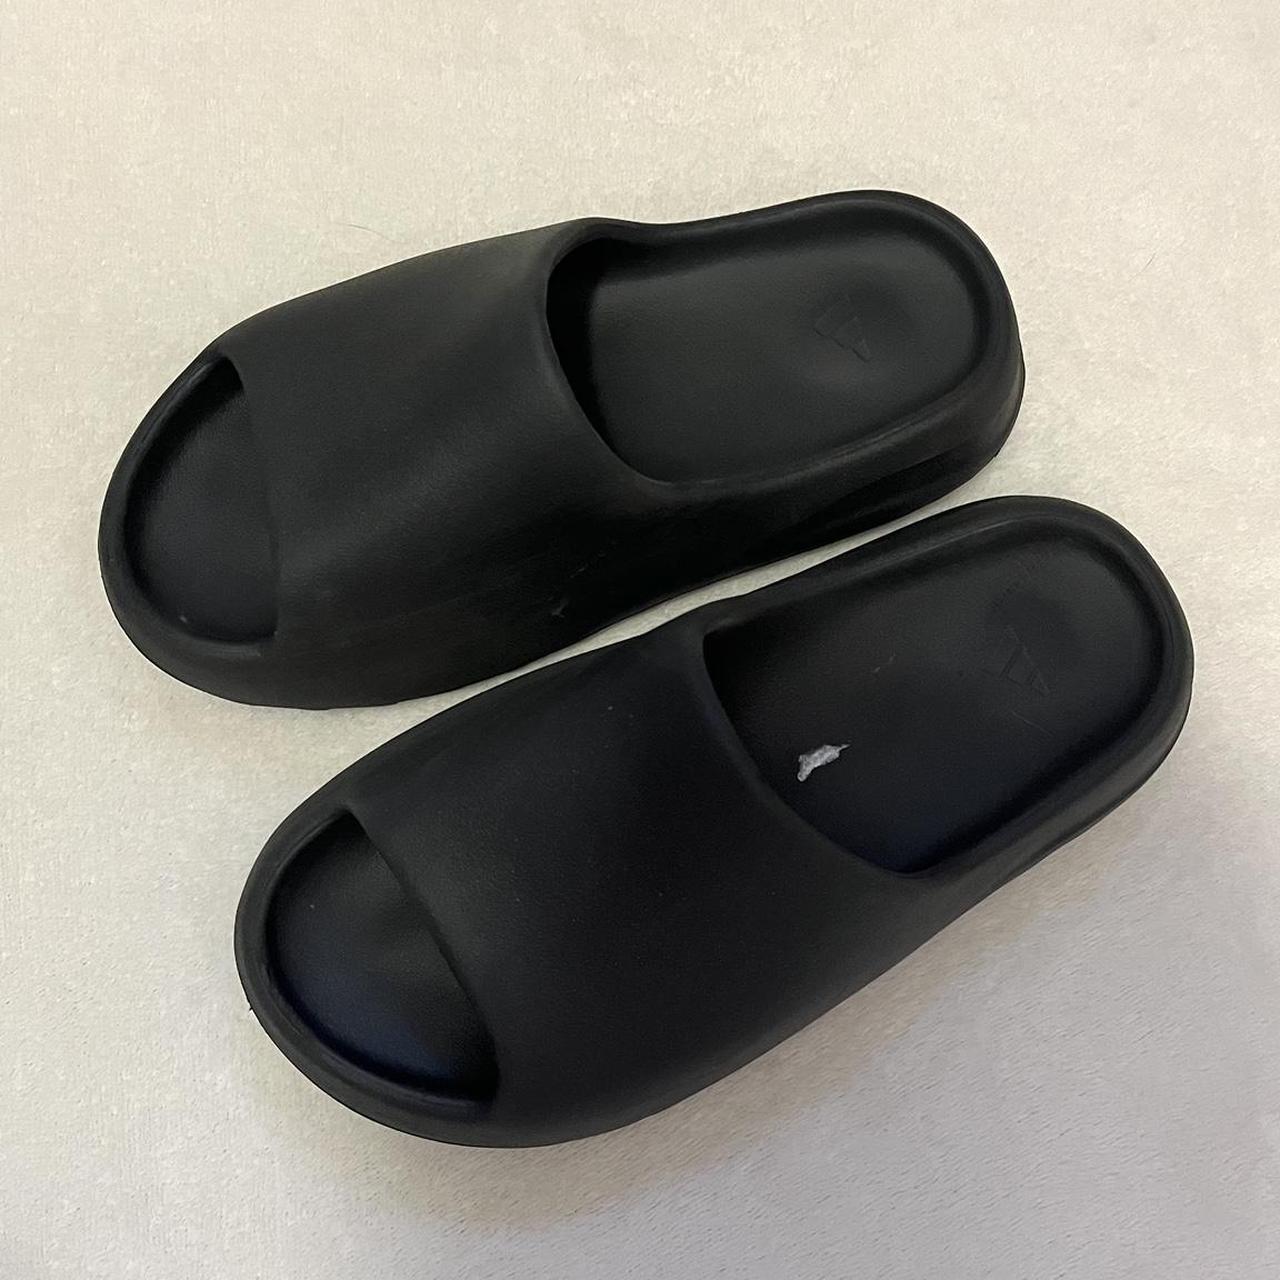 Black Yeezy Adidas Slides 🖤 size 7 men’s, fits like... - Depop